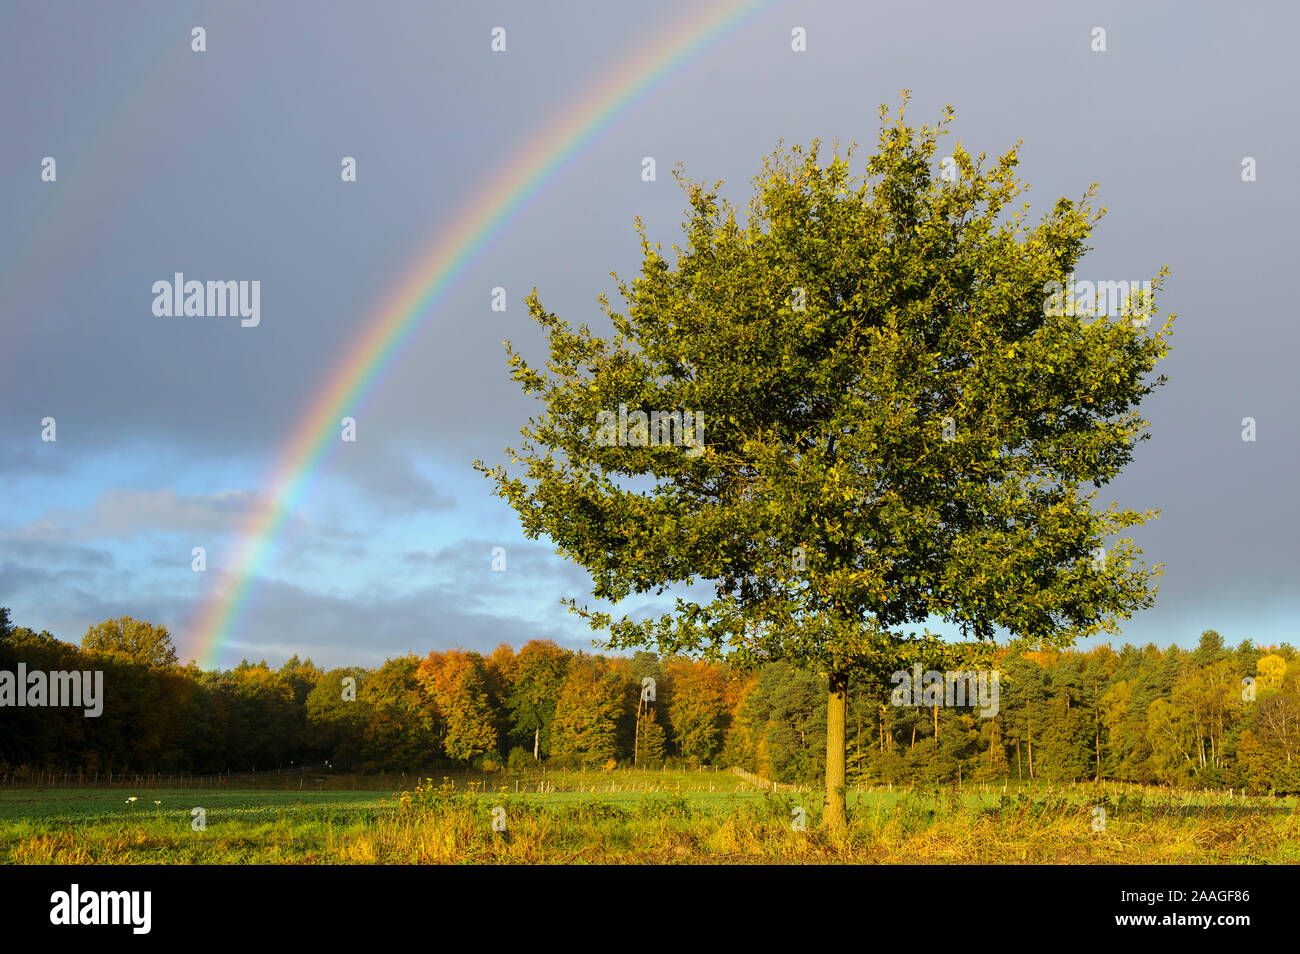 Regenbogen mit Eichenbaum Stock Photo